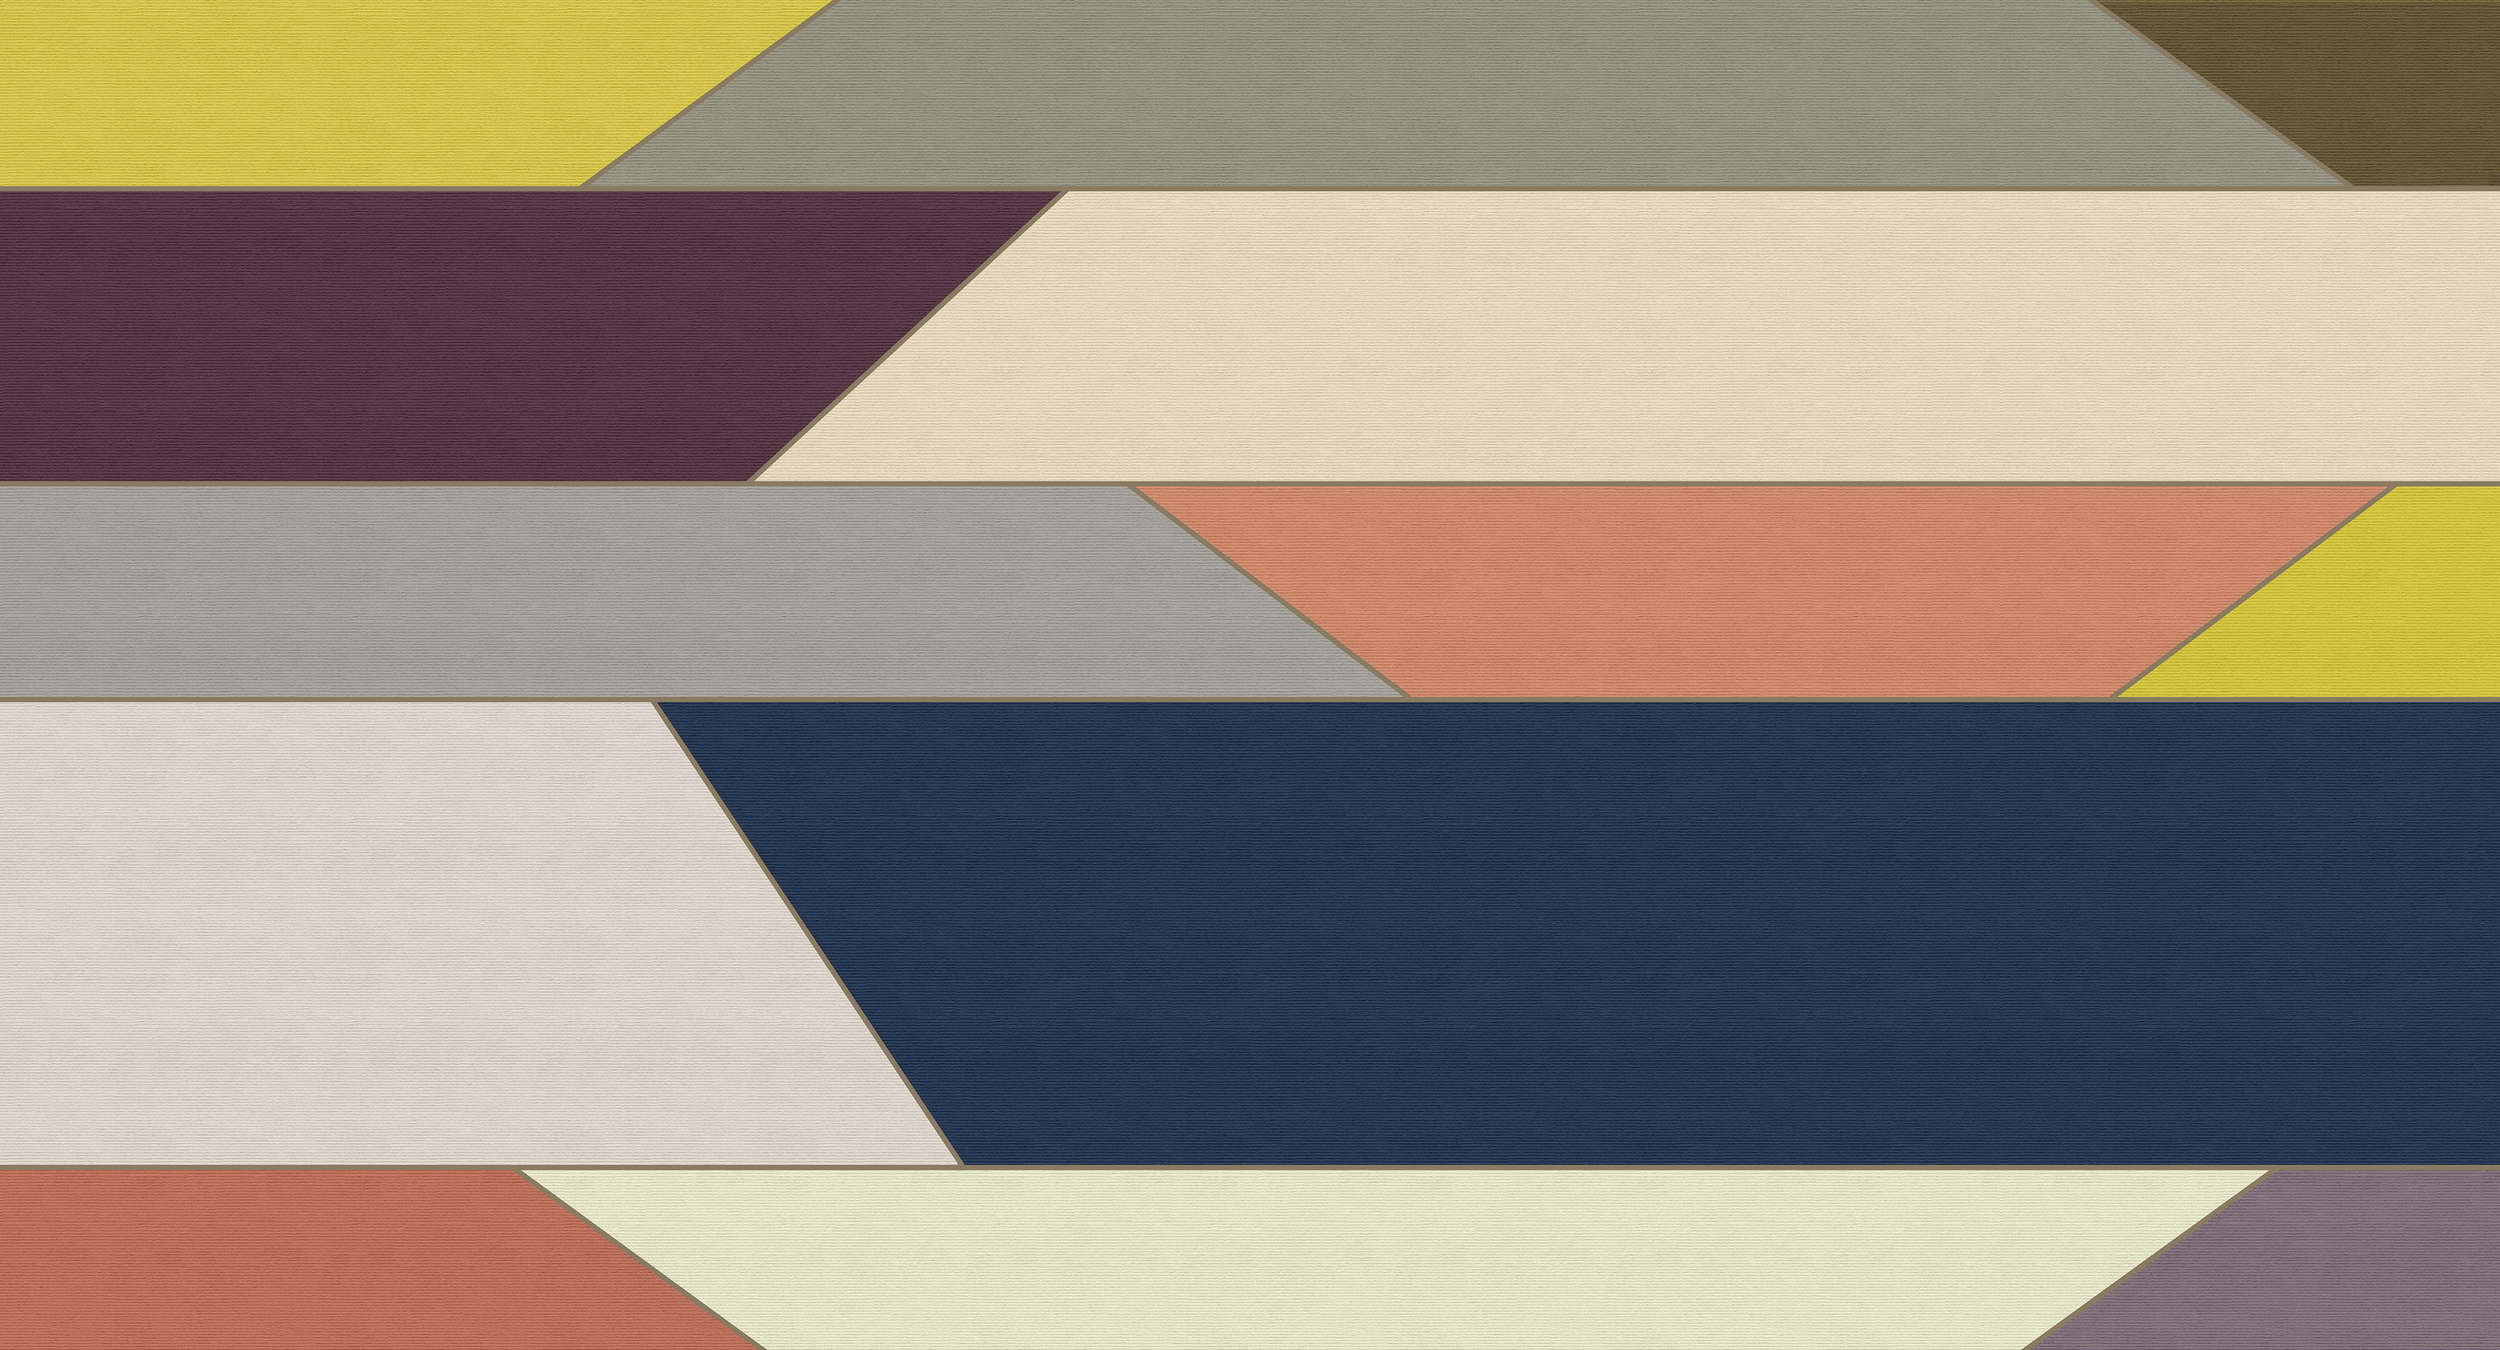             Geometry 1 - Papier peint à rayures horizontales multicolores - À structure côtelée - Beige, Bleu | Premium intissé lisse
        